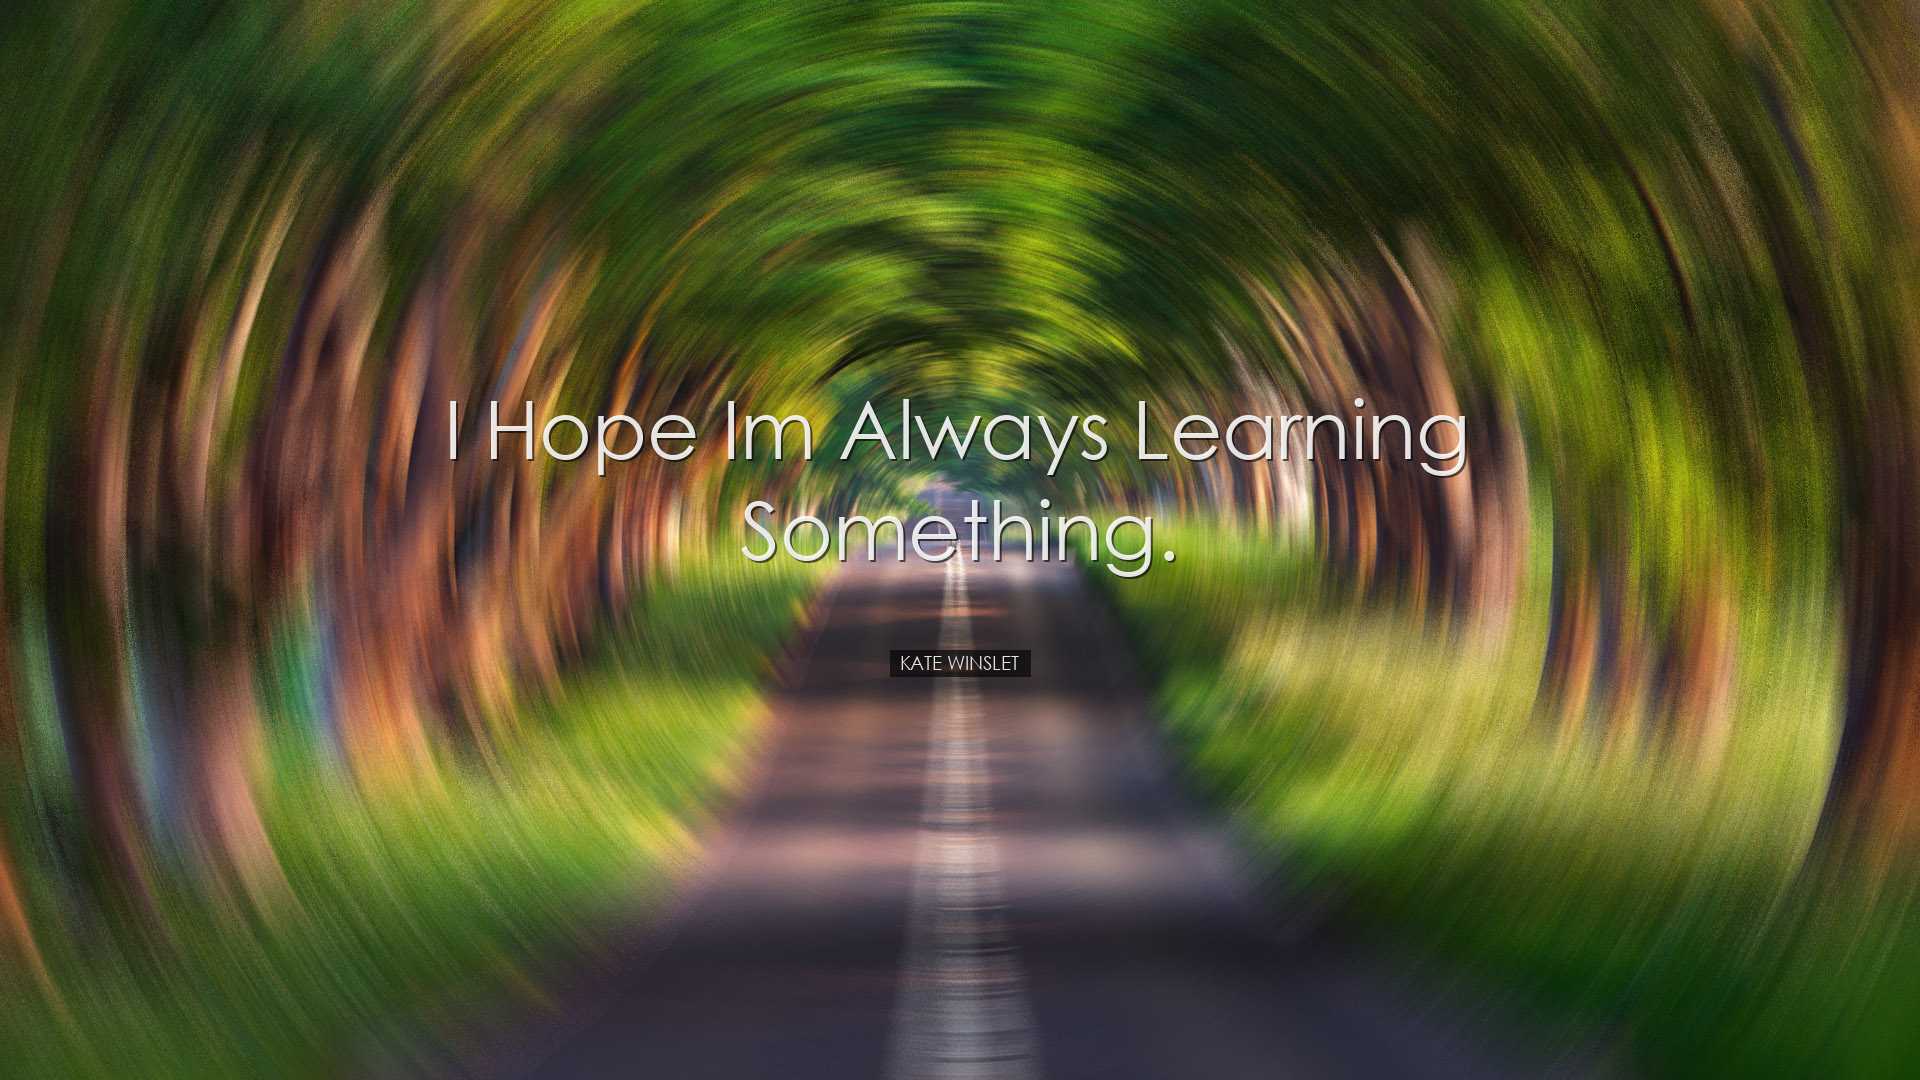 I hope Im always learning something. - Kate Winslet